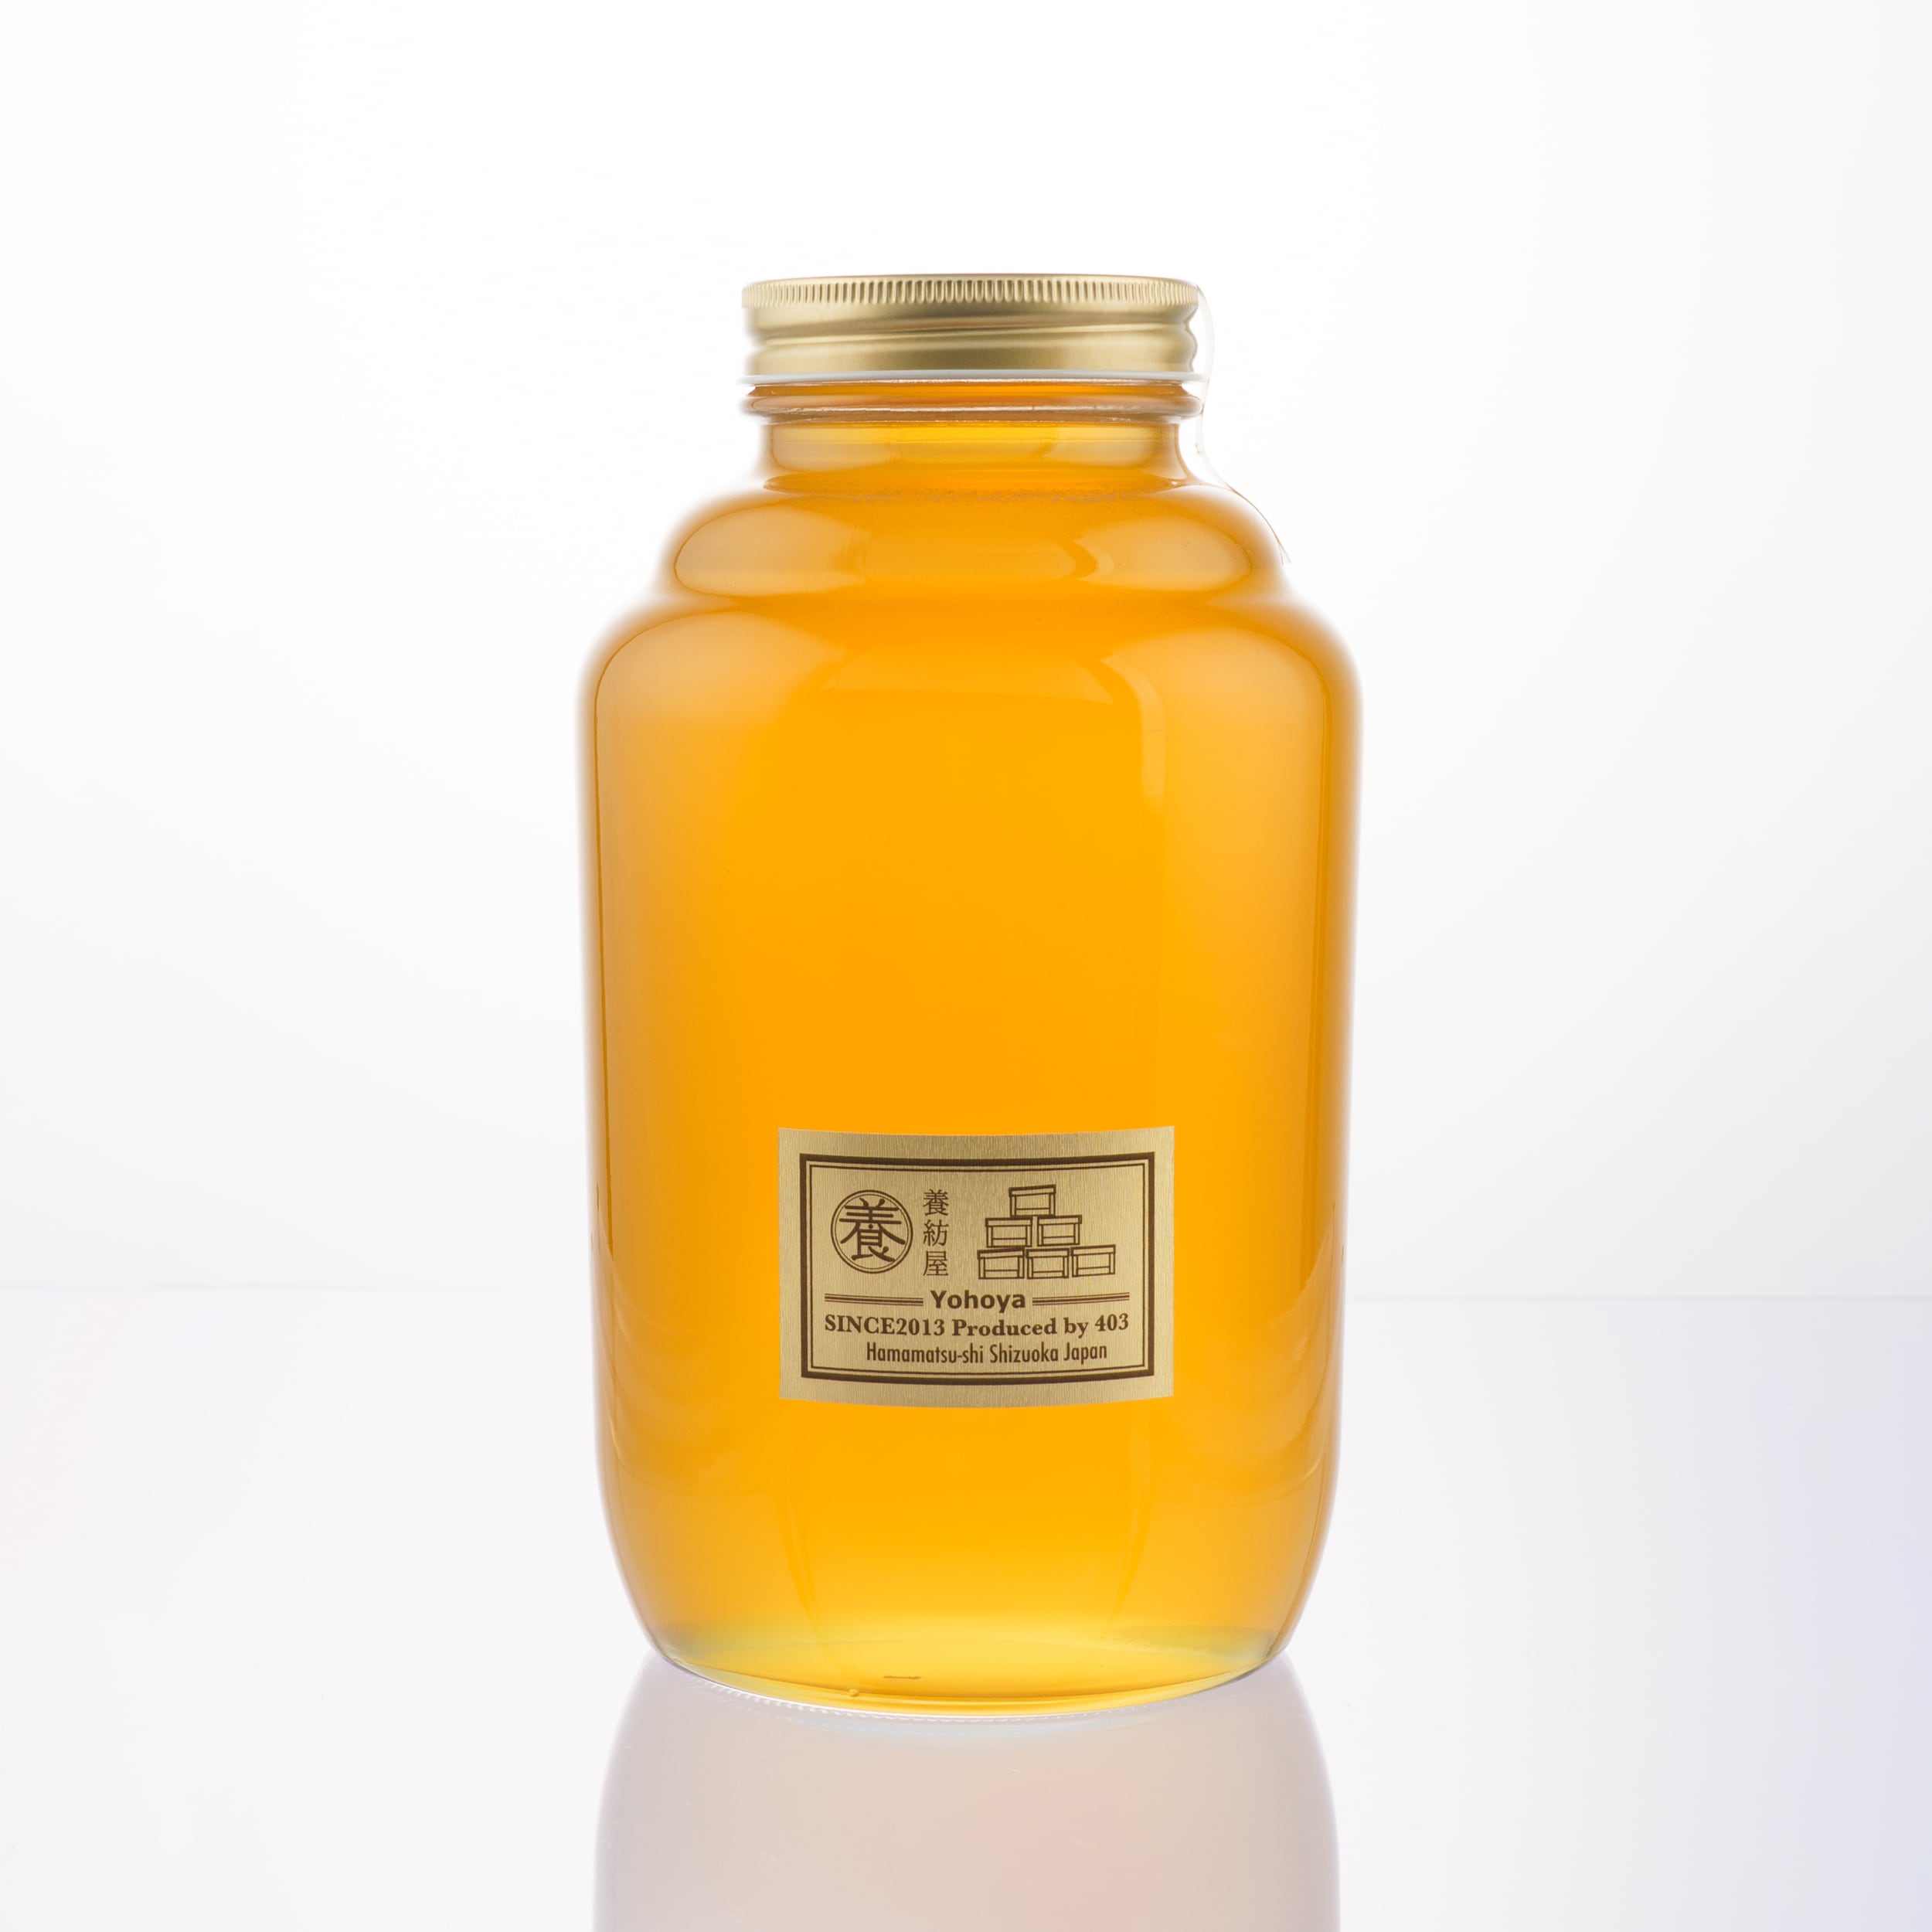 健康食品純国産ハチミツ一升瓶(二本)